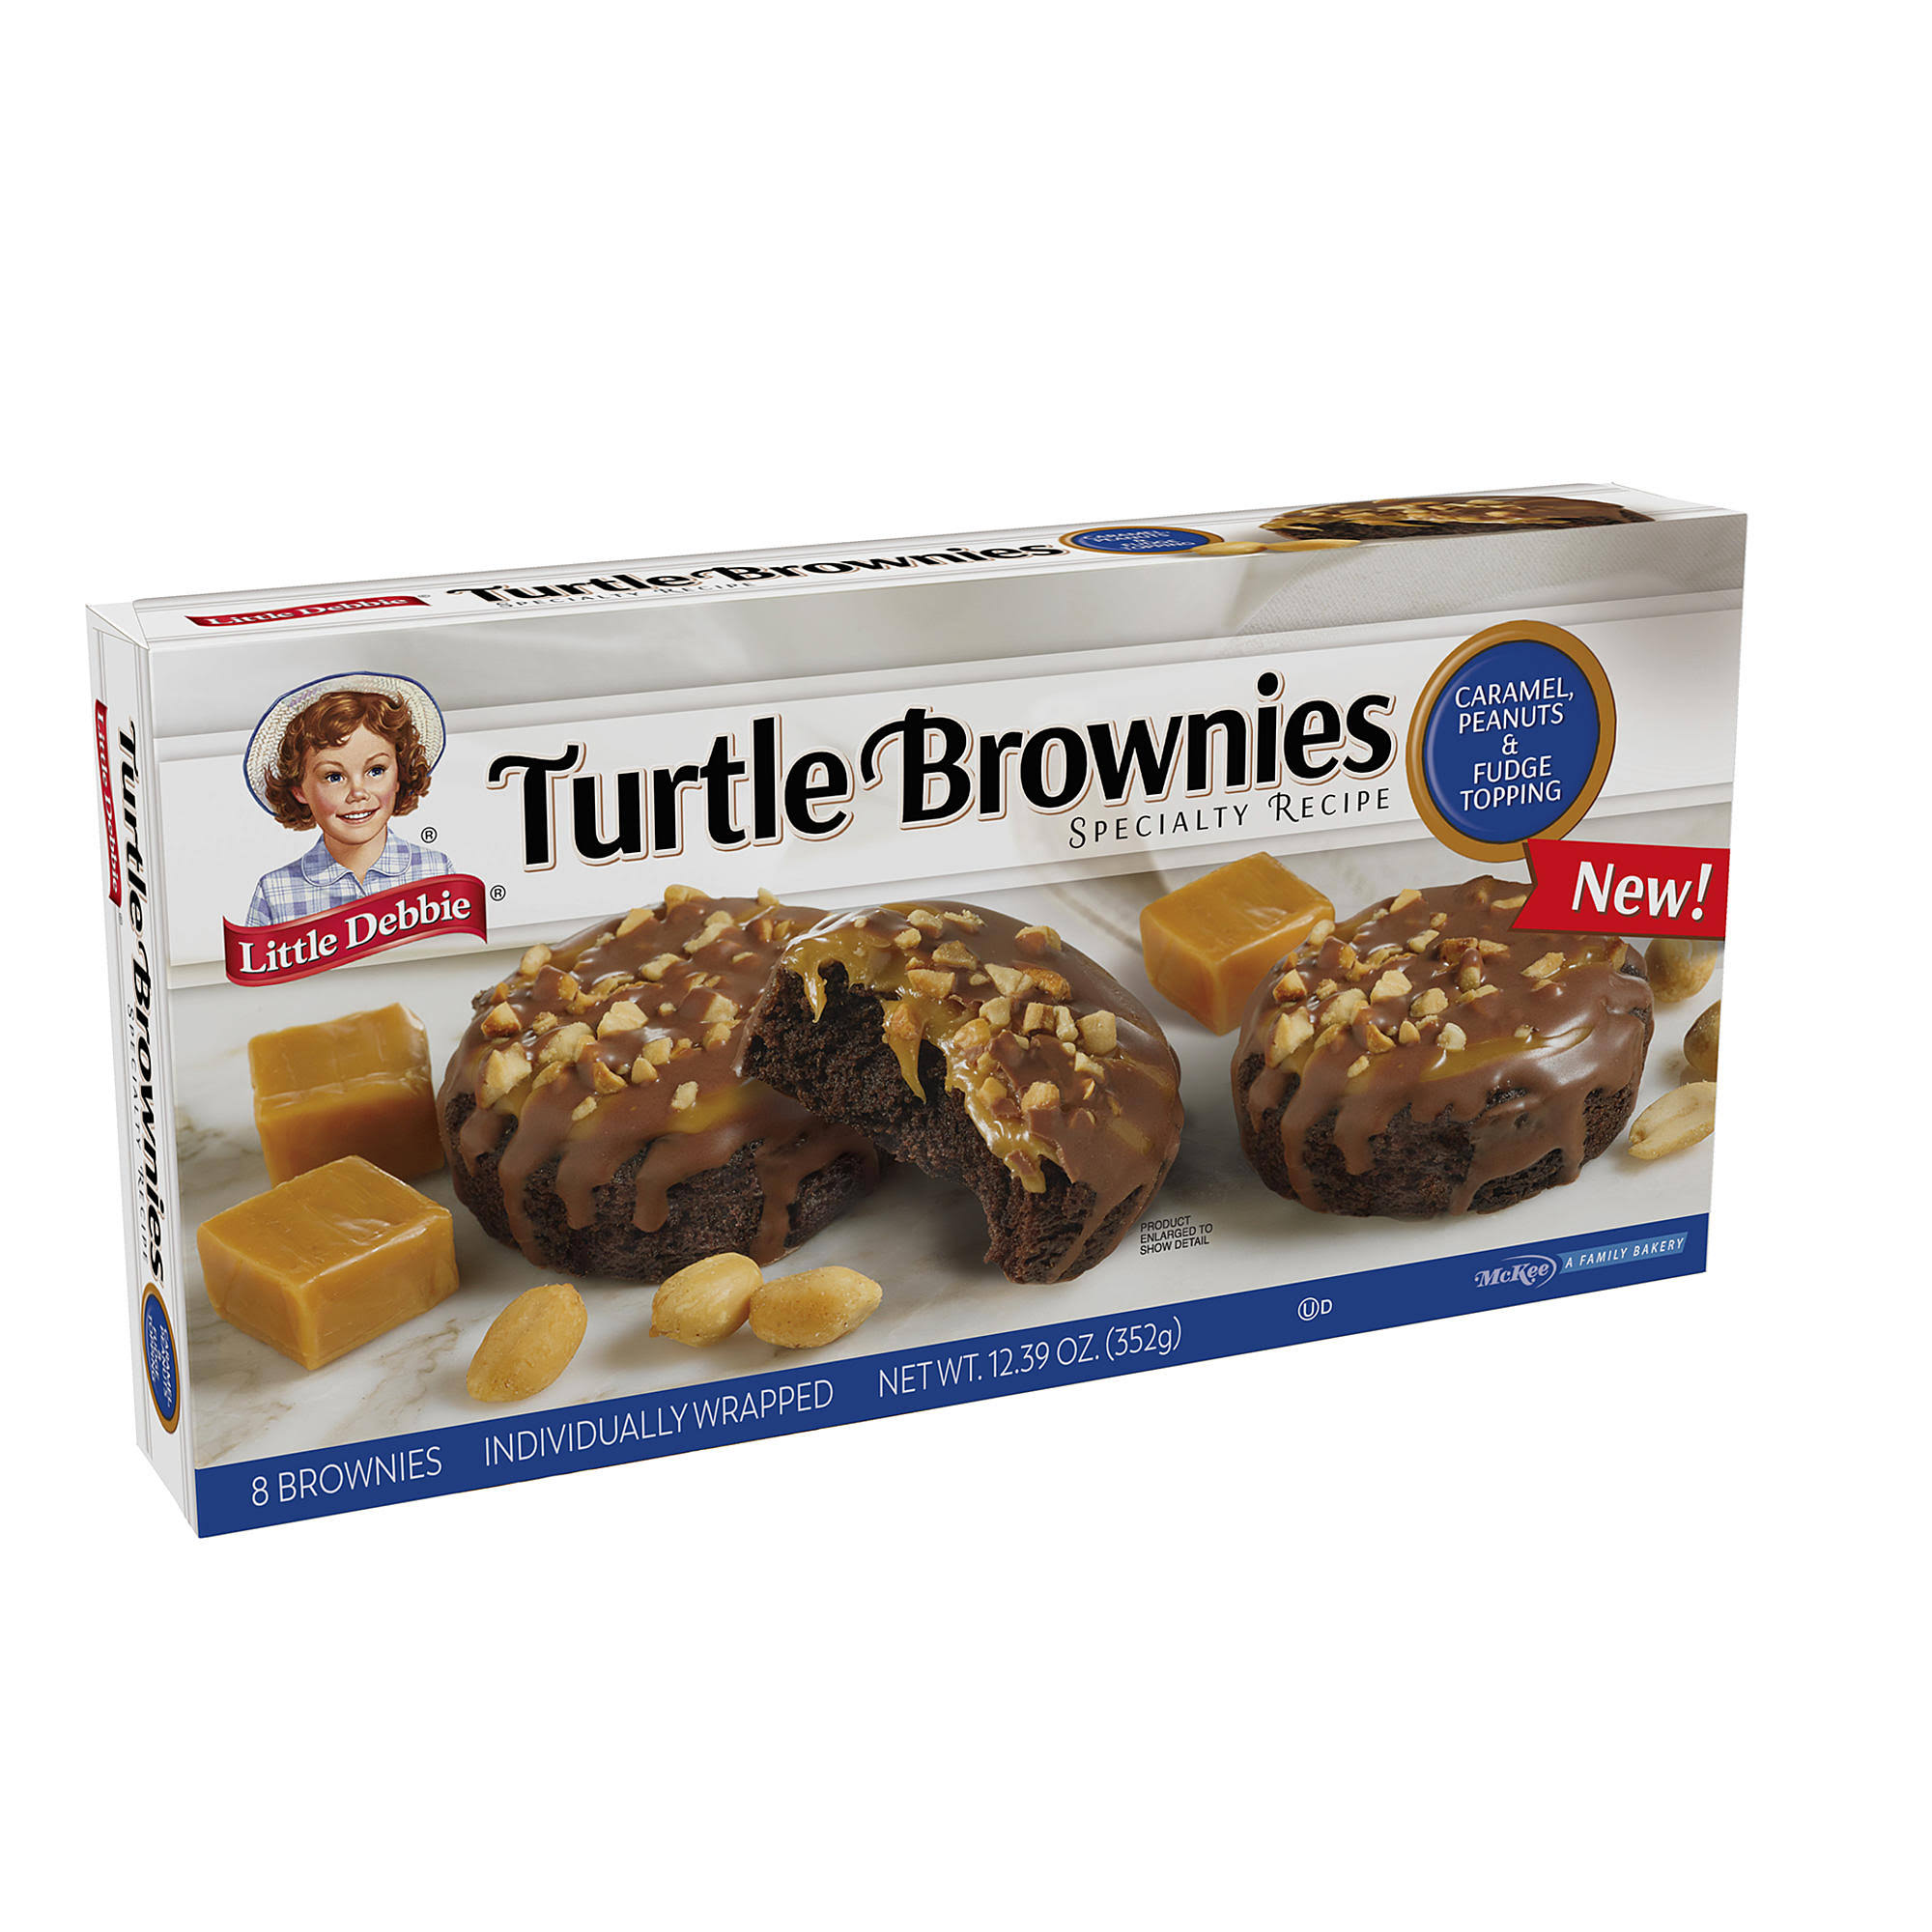 Little Debbie Turtle Brownies 12.39 oz